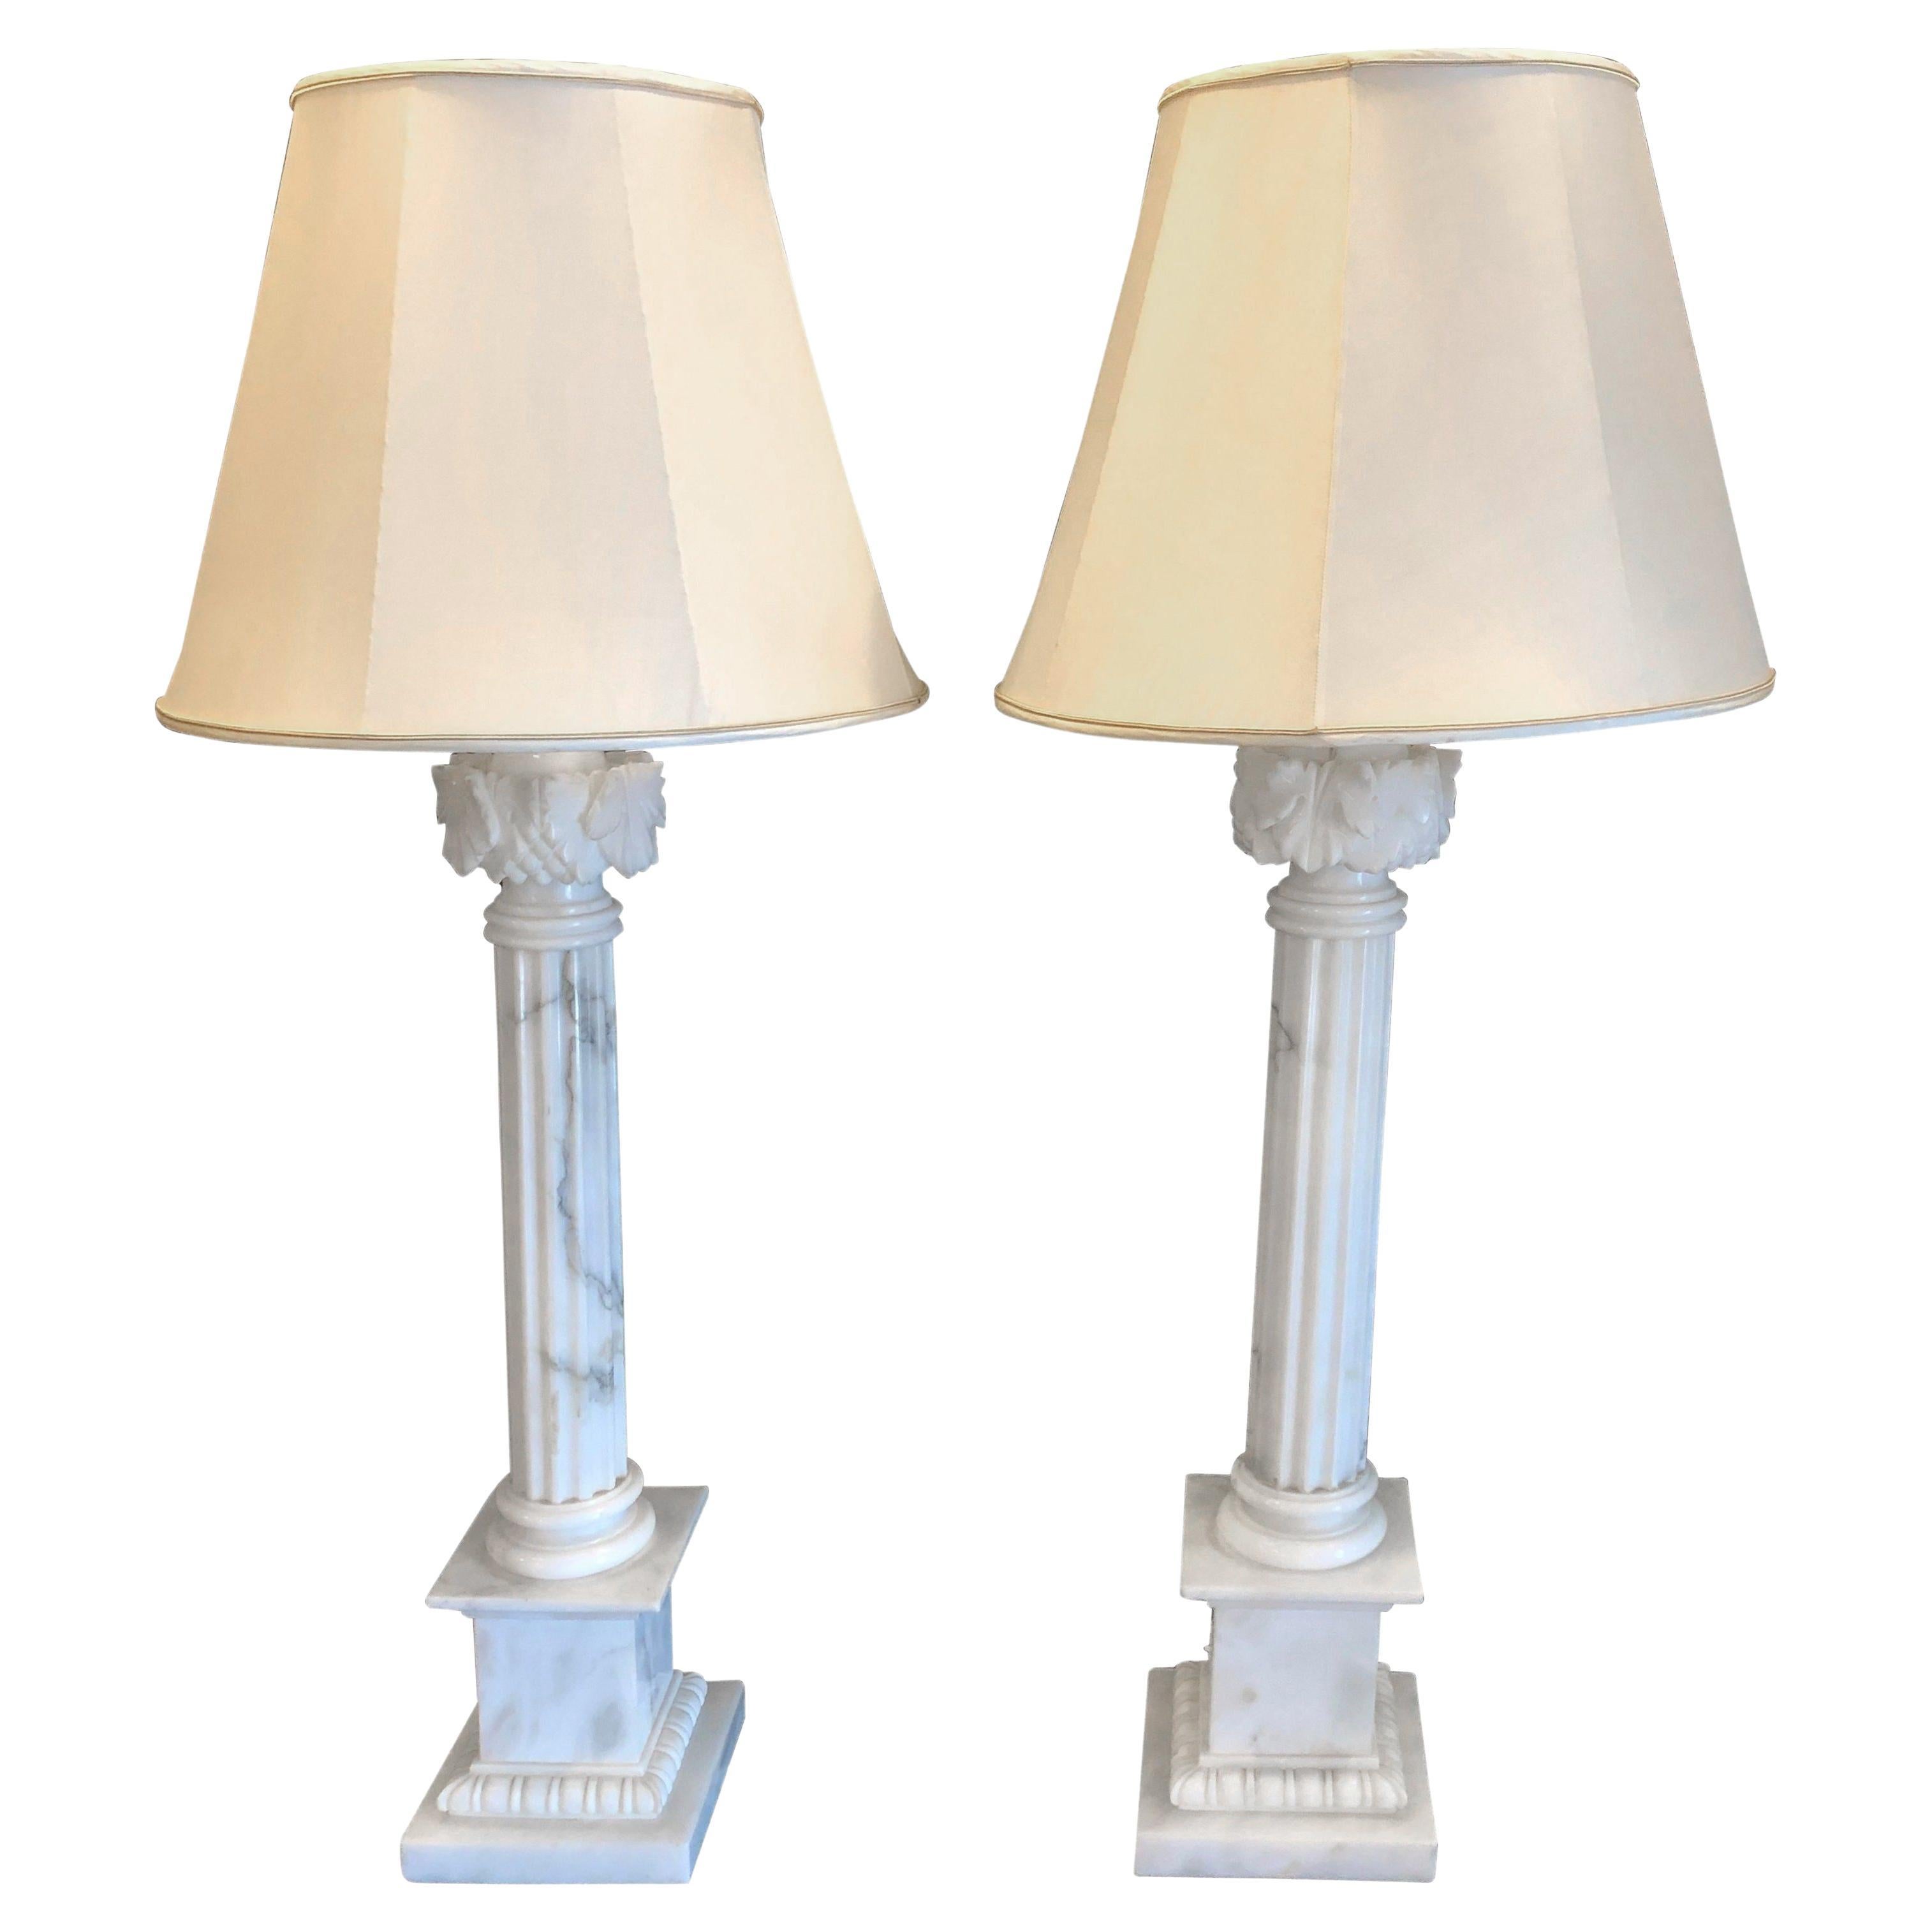 Paire de lampes de bureau à colonne veinée en marbre blanc et gris avec abat-jours sur mesure